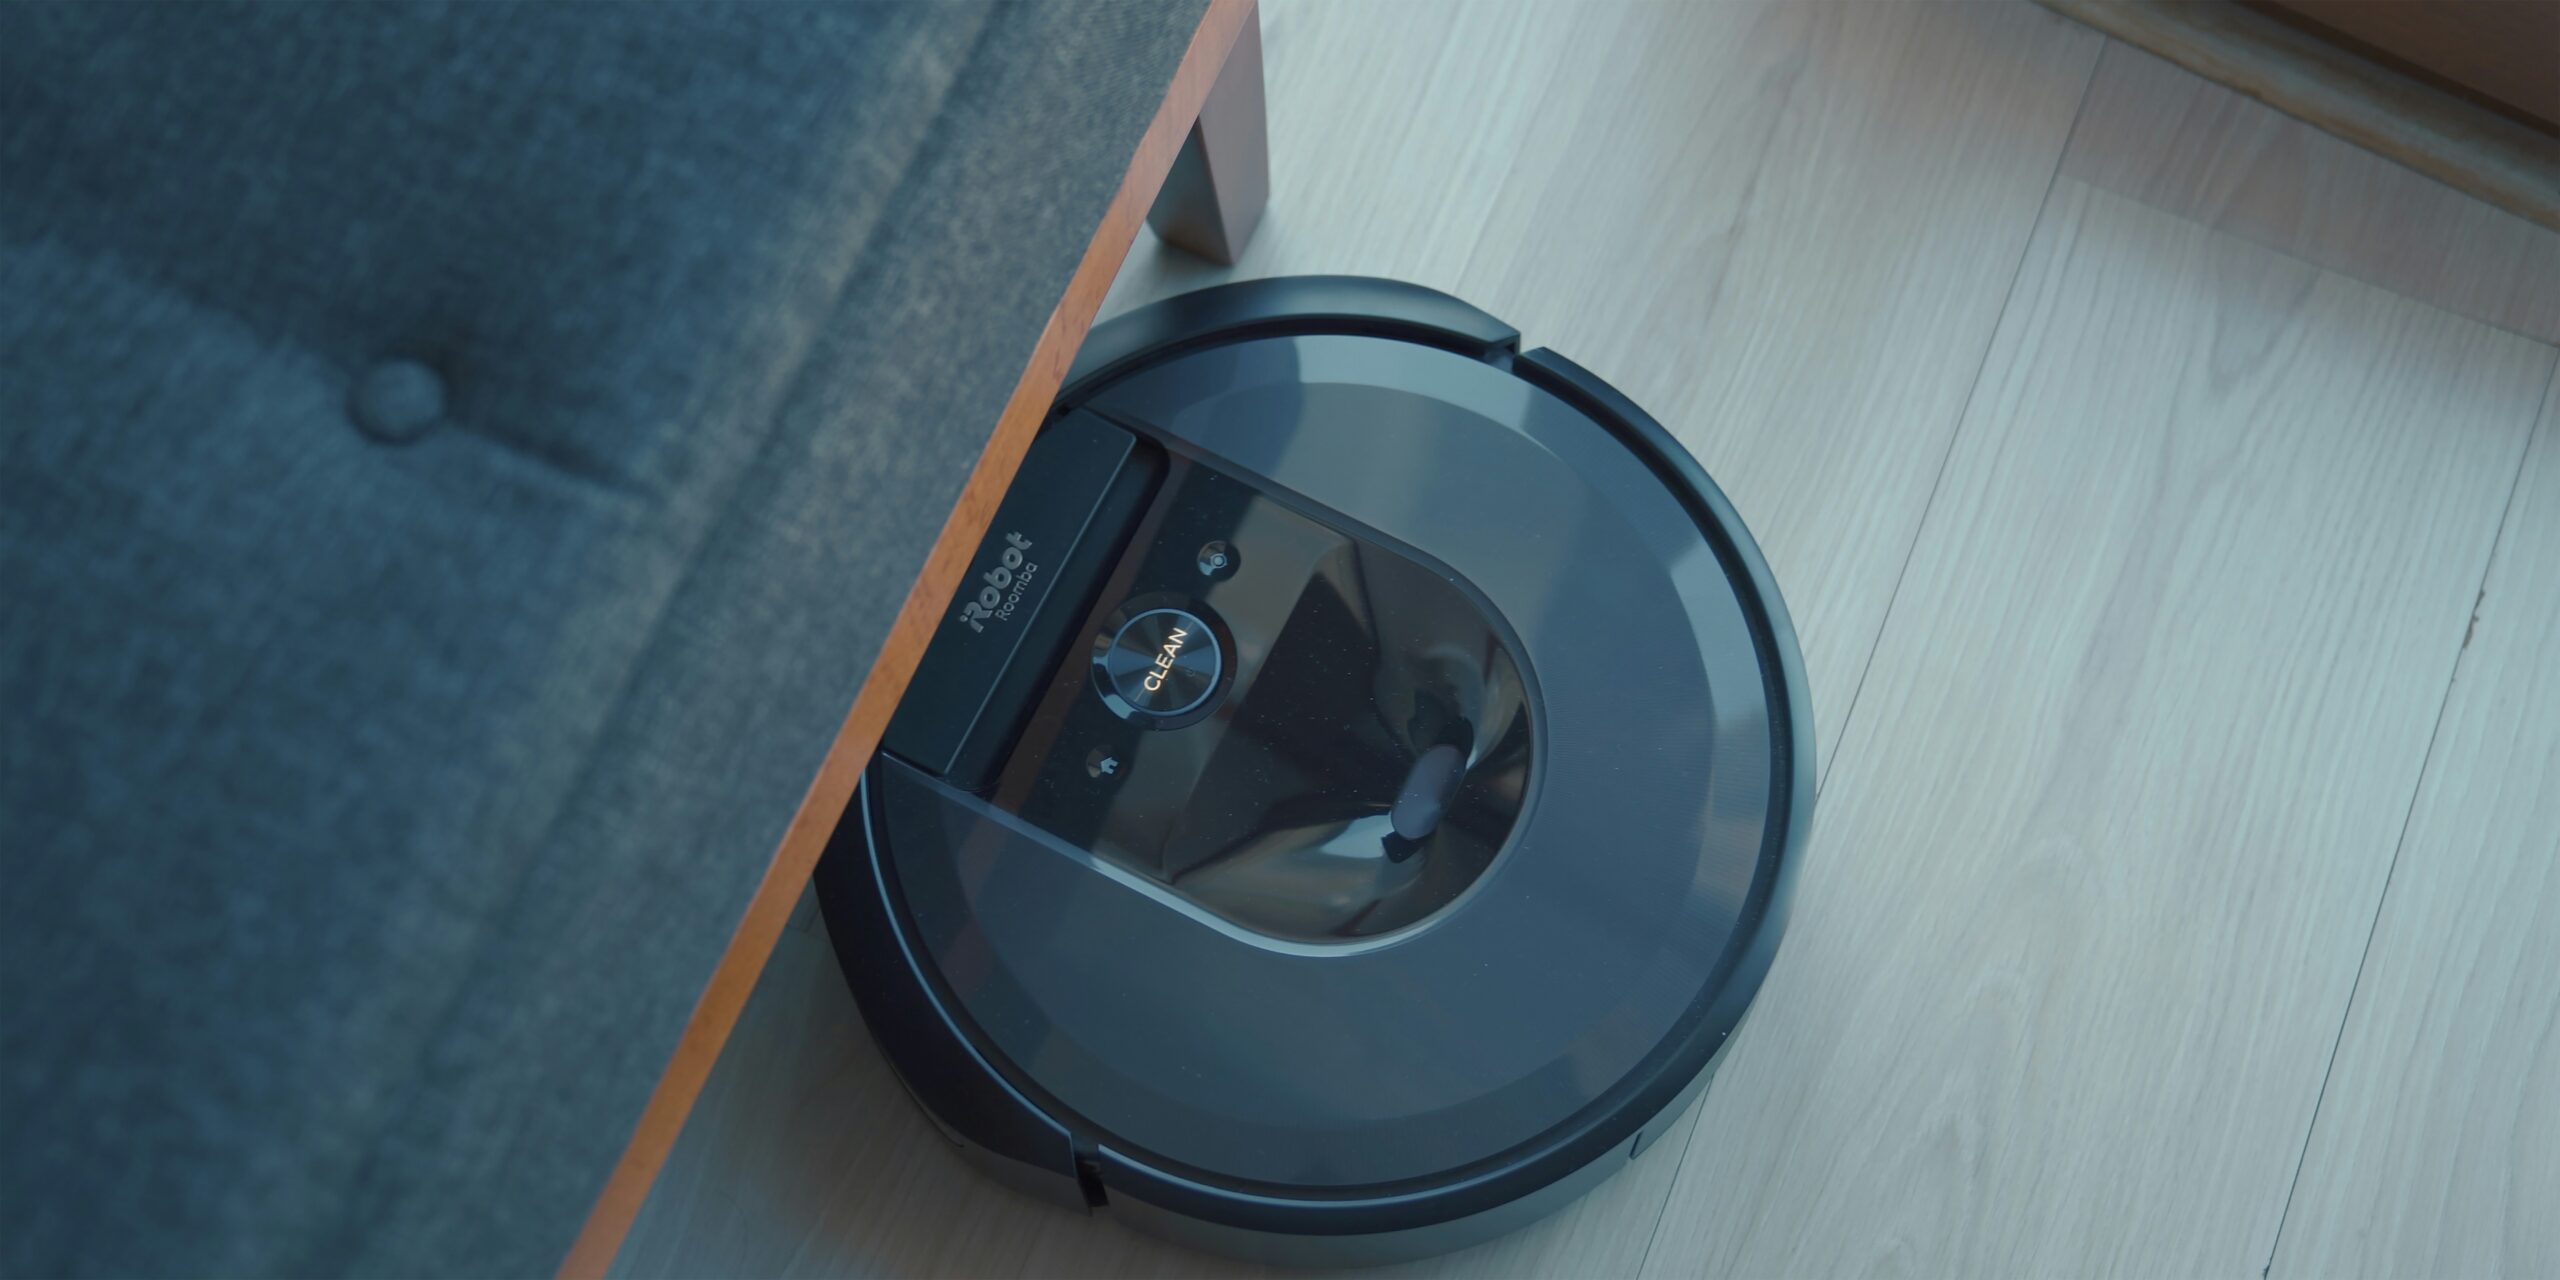 2. Roomba Robotic Vacuum Cleaner